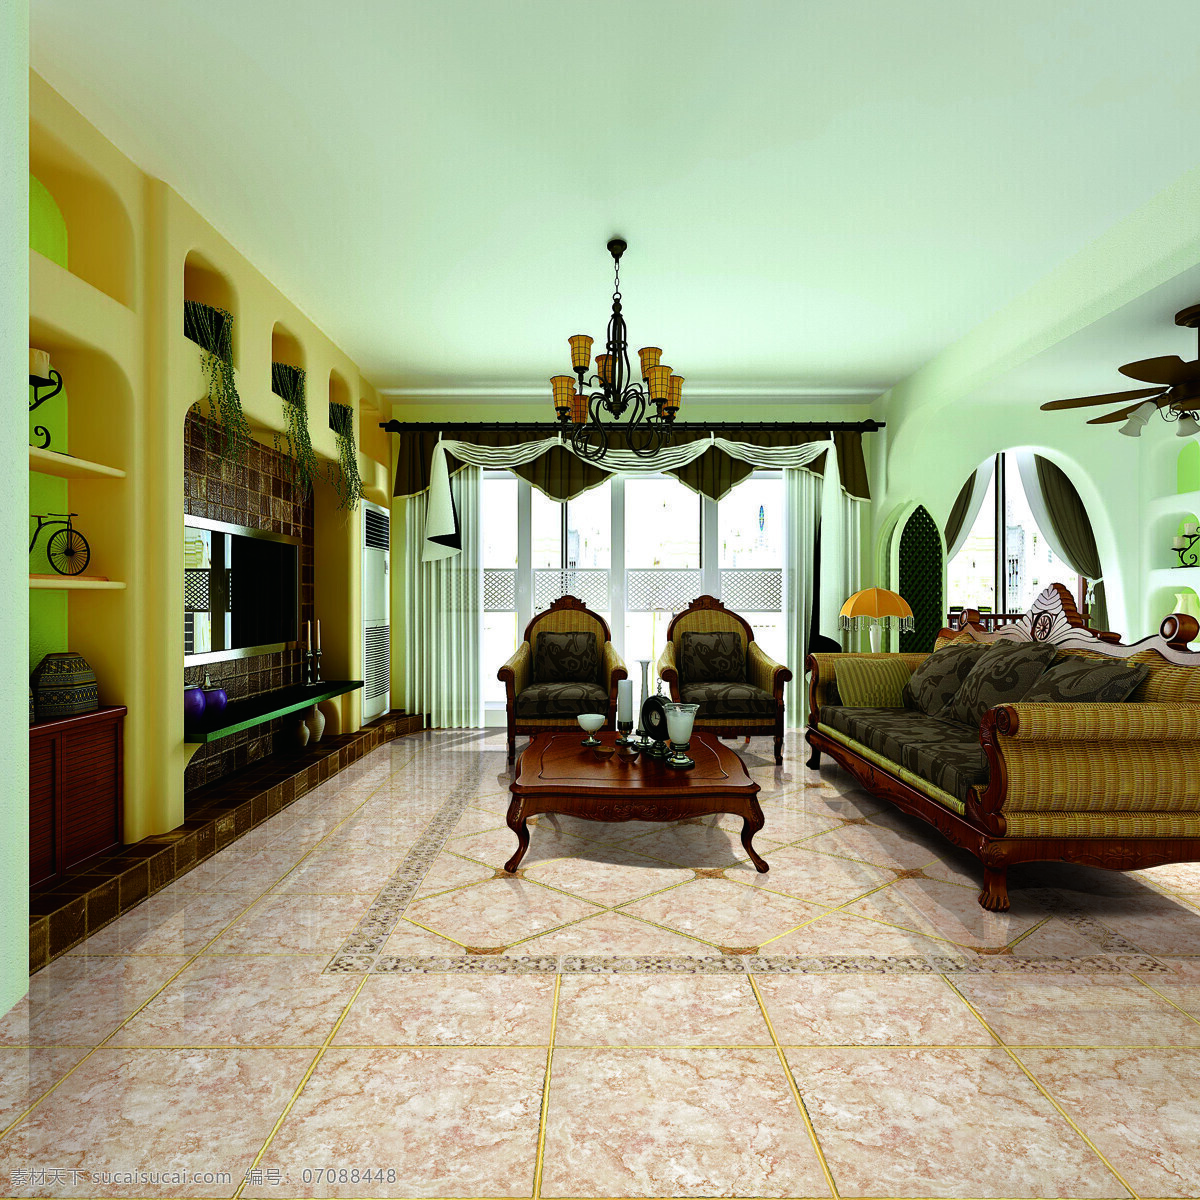 客厅 吊灯 环境设计 欧式 沙发 室内设计 陶瓷 客厅设计素材 客厅模板下载 装饰素材